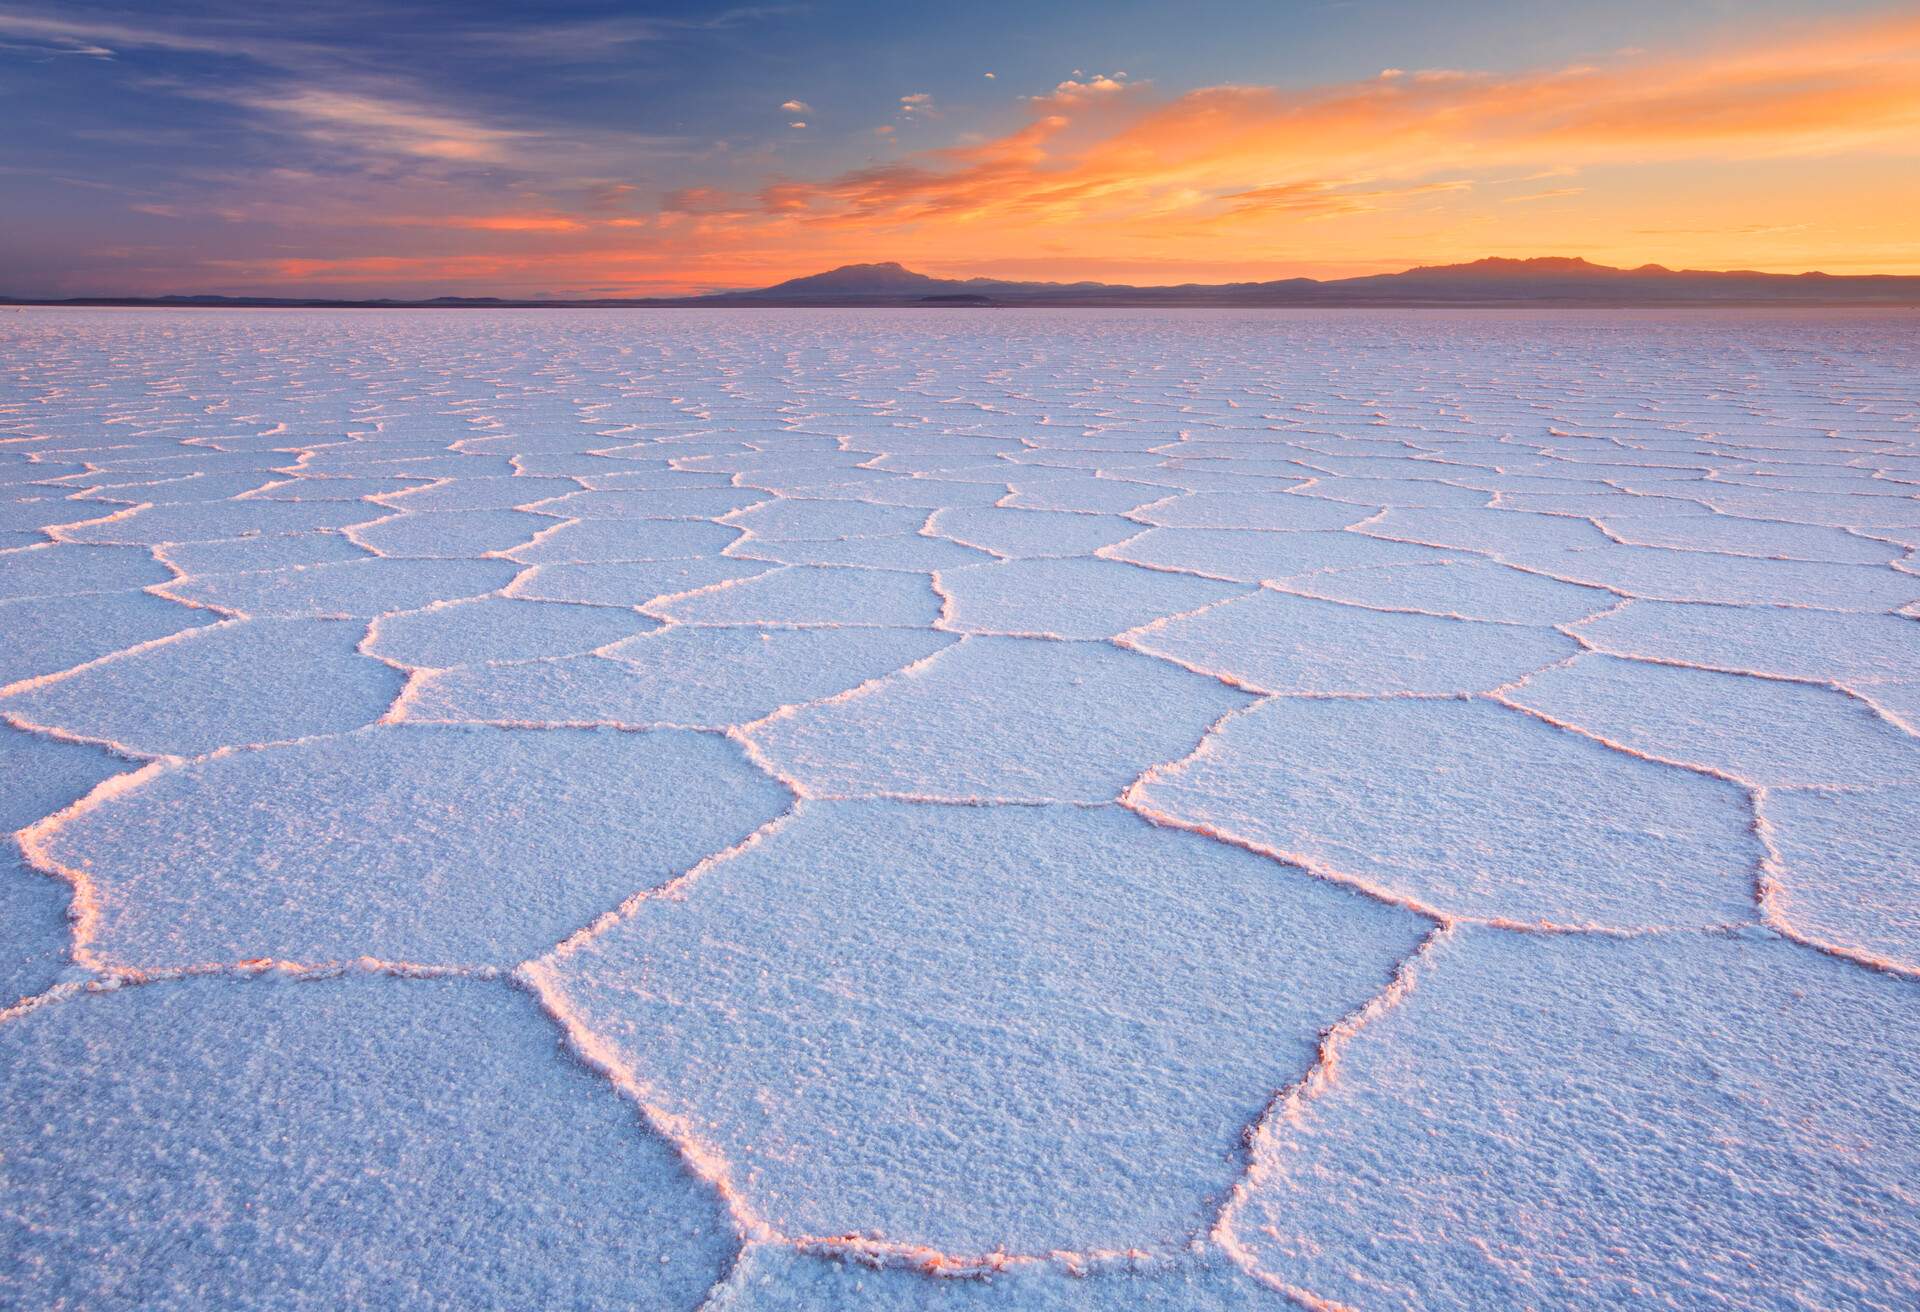 The world's largest salt flat, Salar de Uyuni in Bolivia, sunrise.
